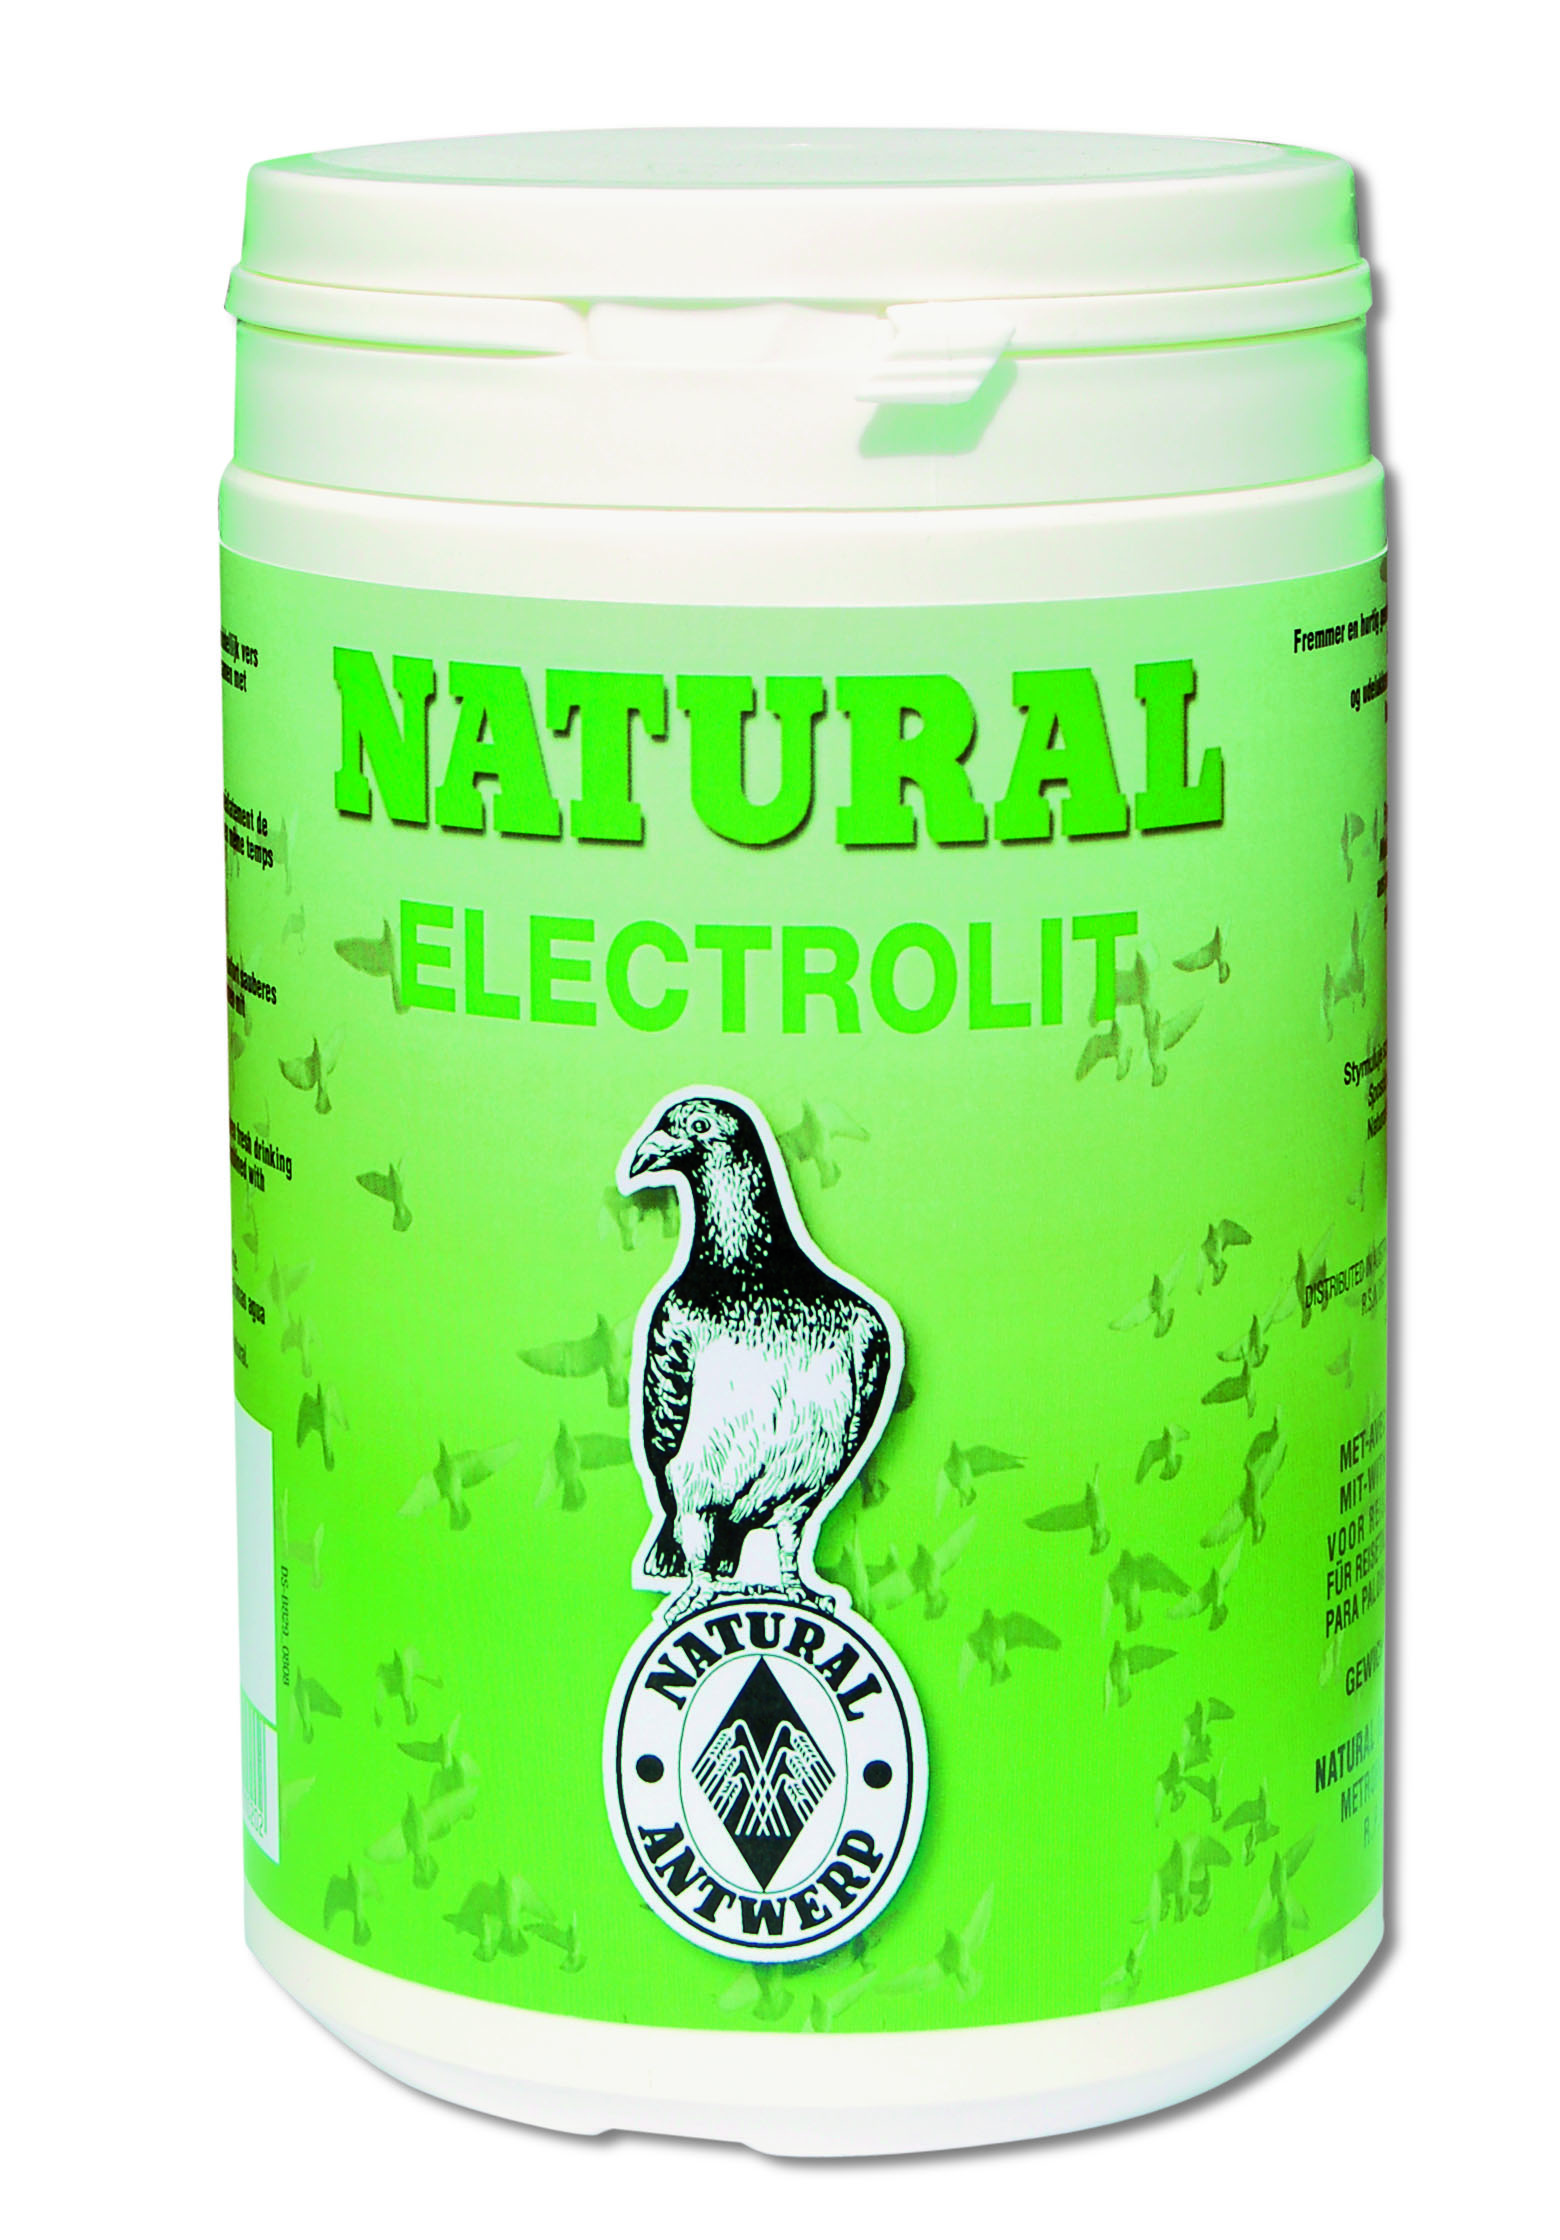 Natural electrolit - Product shot